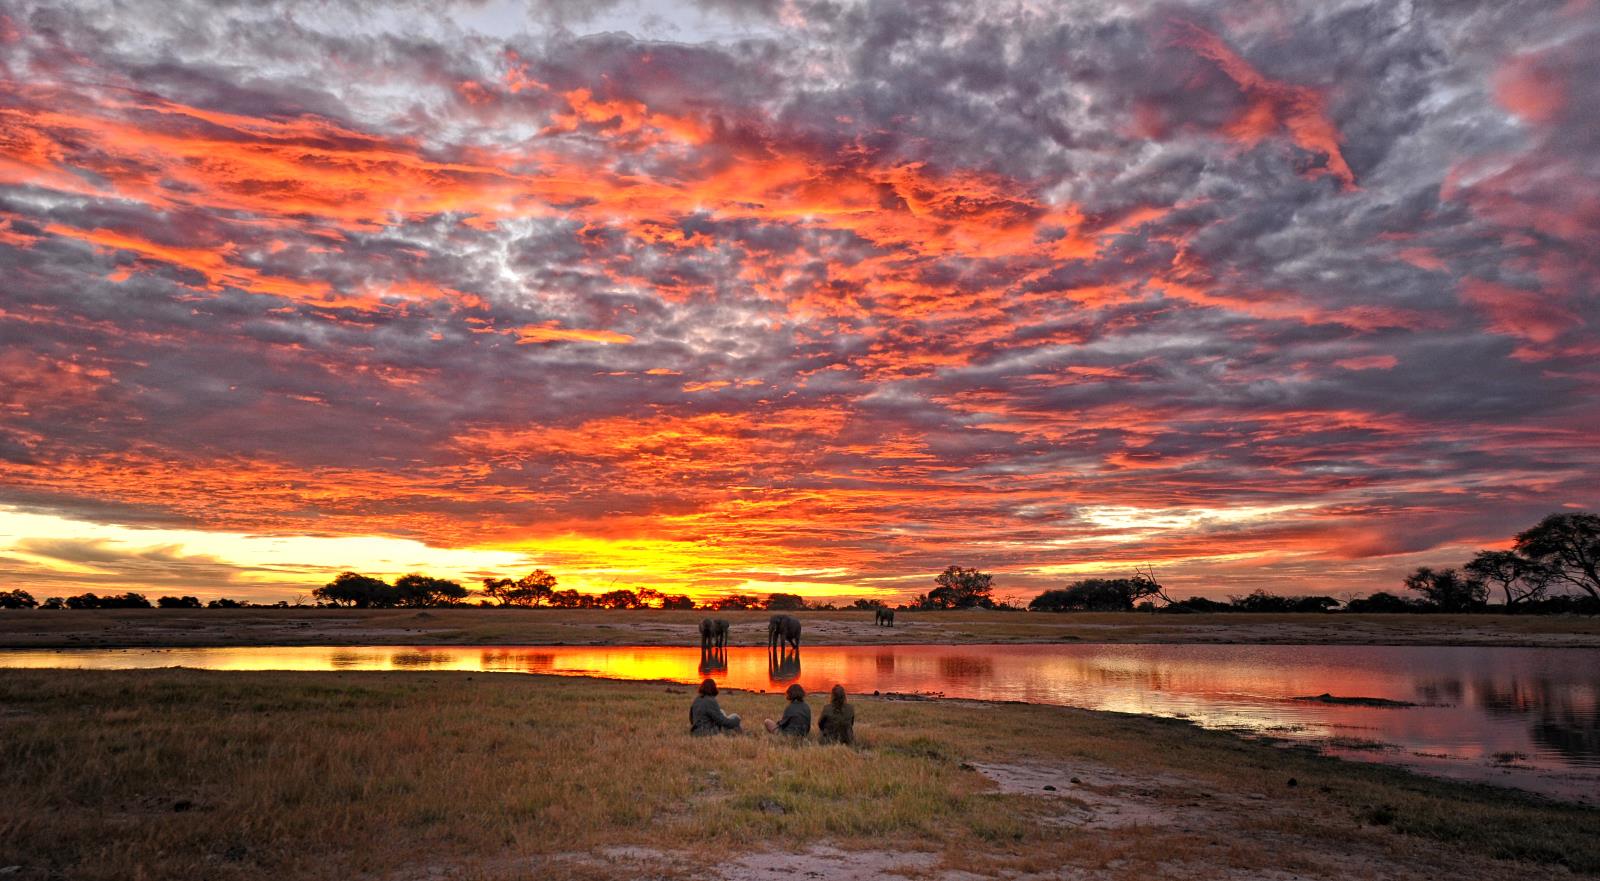 Sunset in Hwange - Zimbabwe and Mozambique